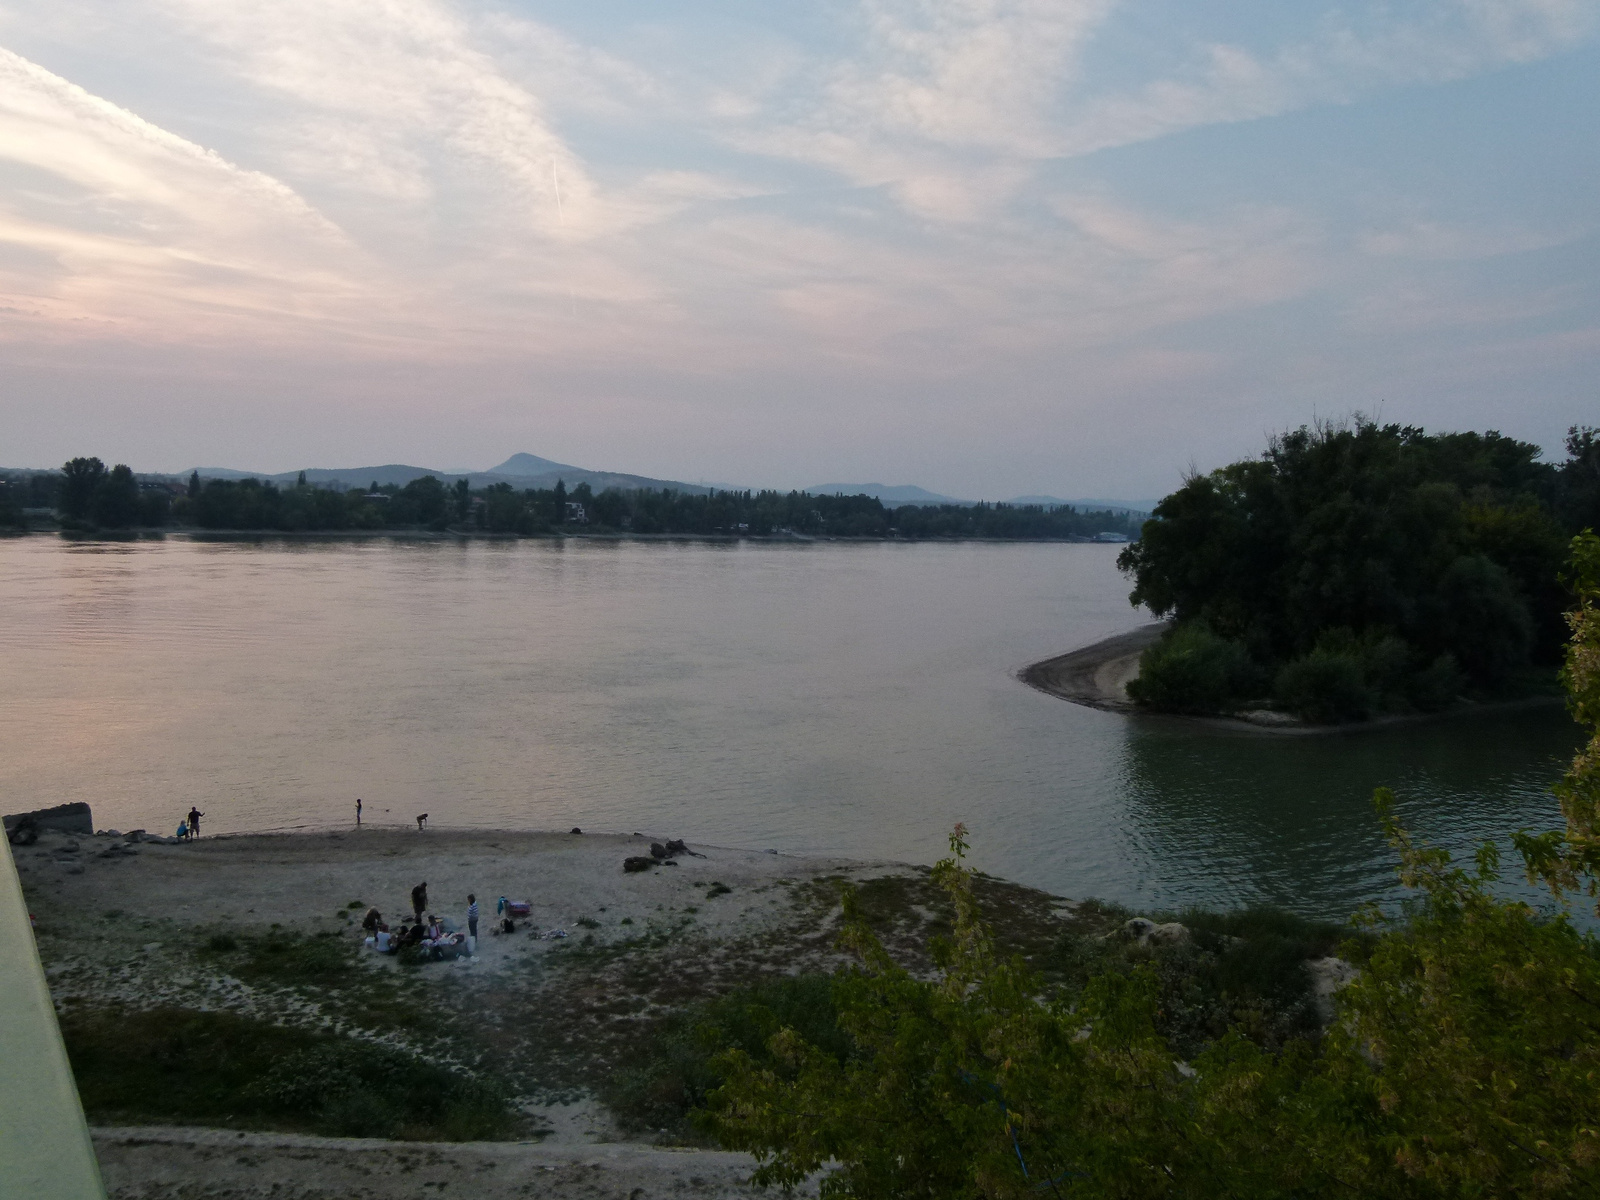 Pezsgő élet a Duna partján (P1250381)